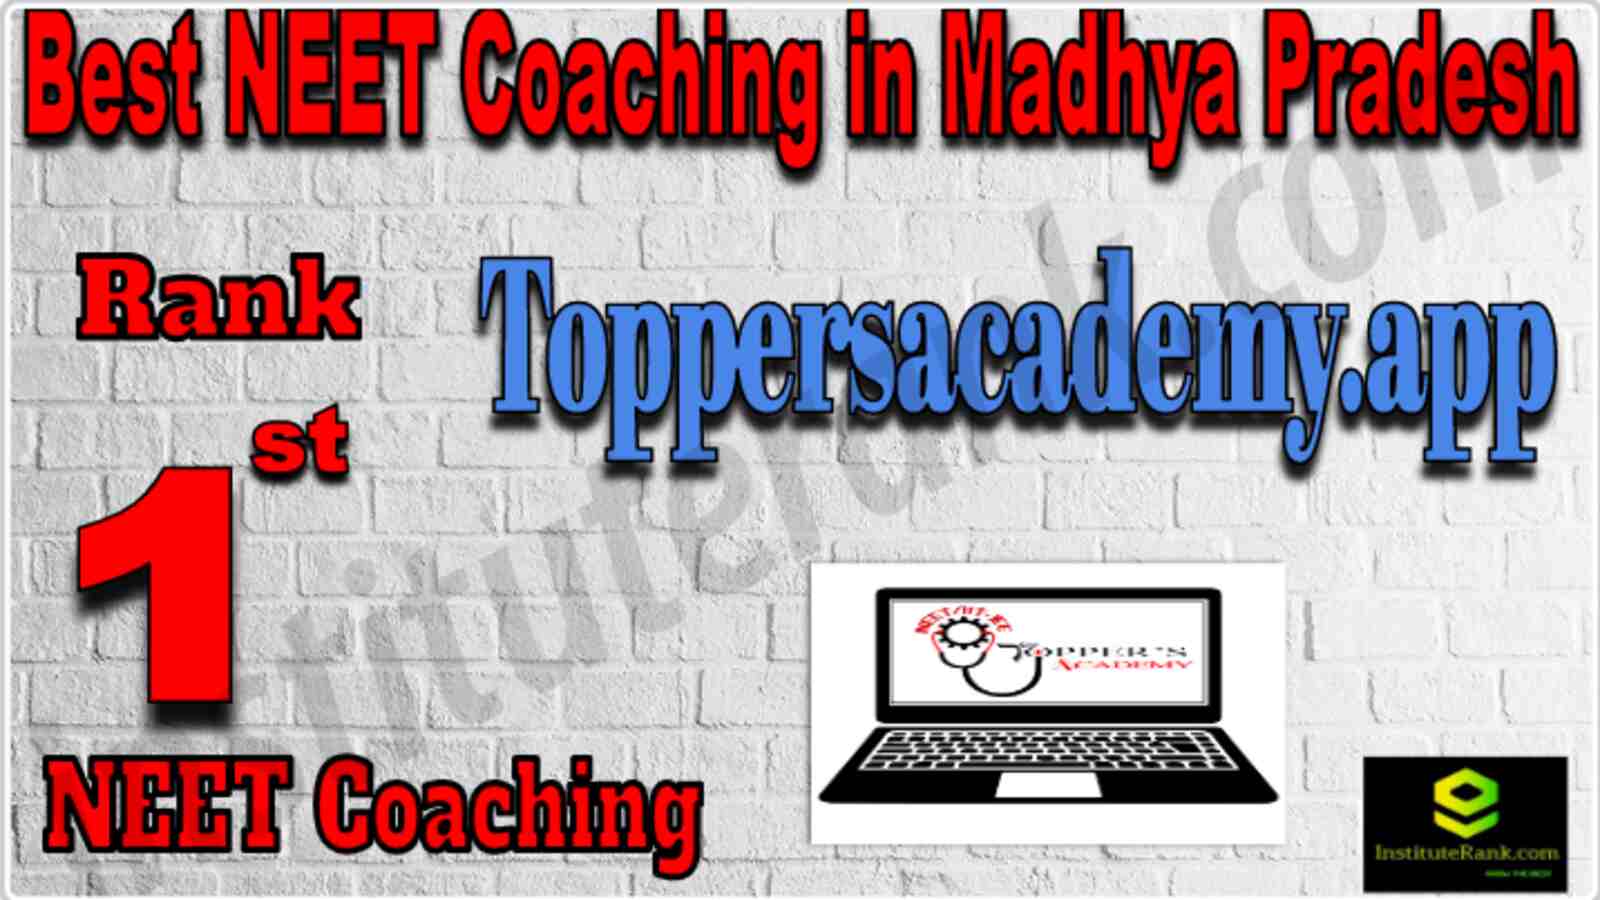 Rank 1 Best NEET Coaching in Madhya Pradesh 2022